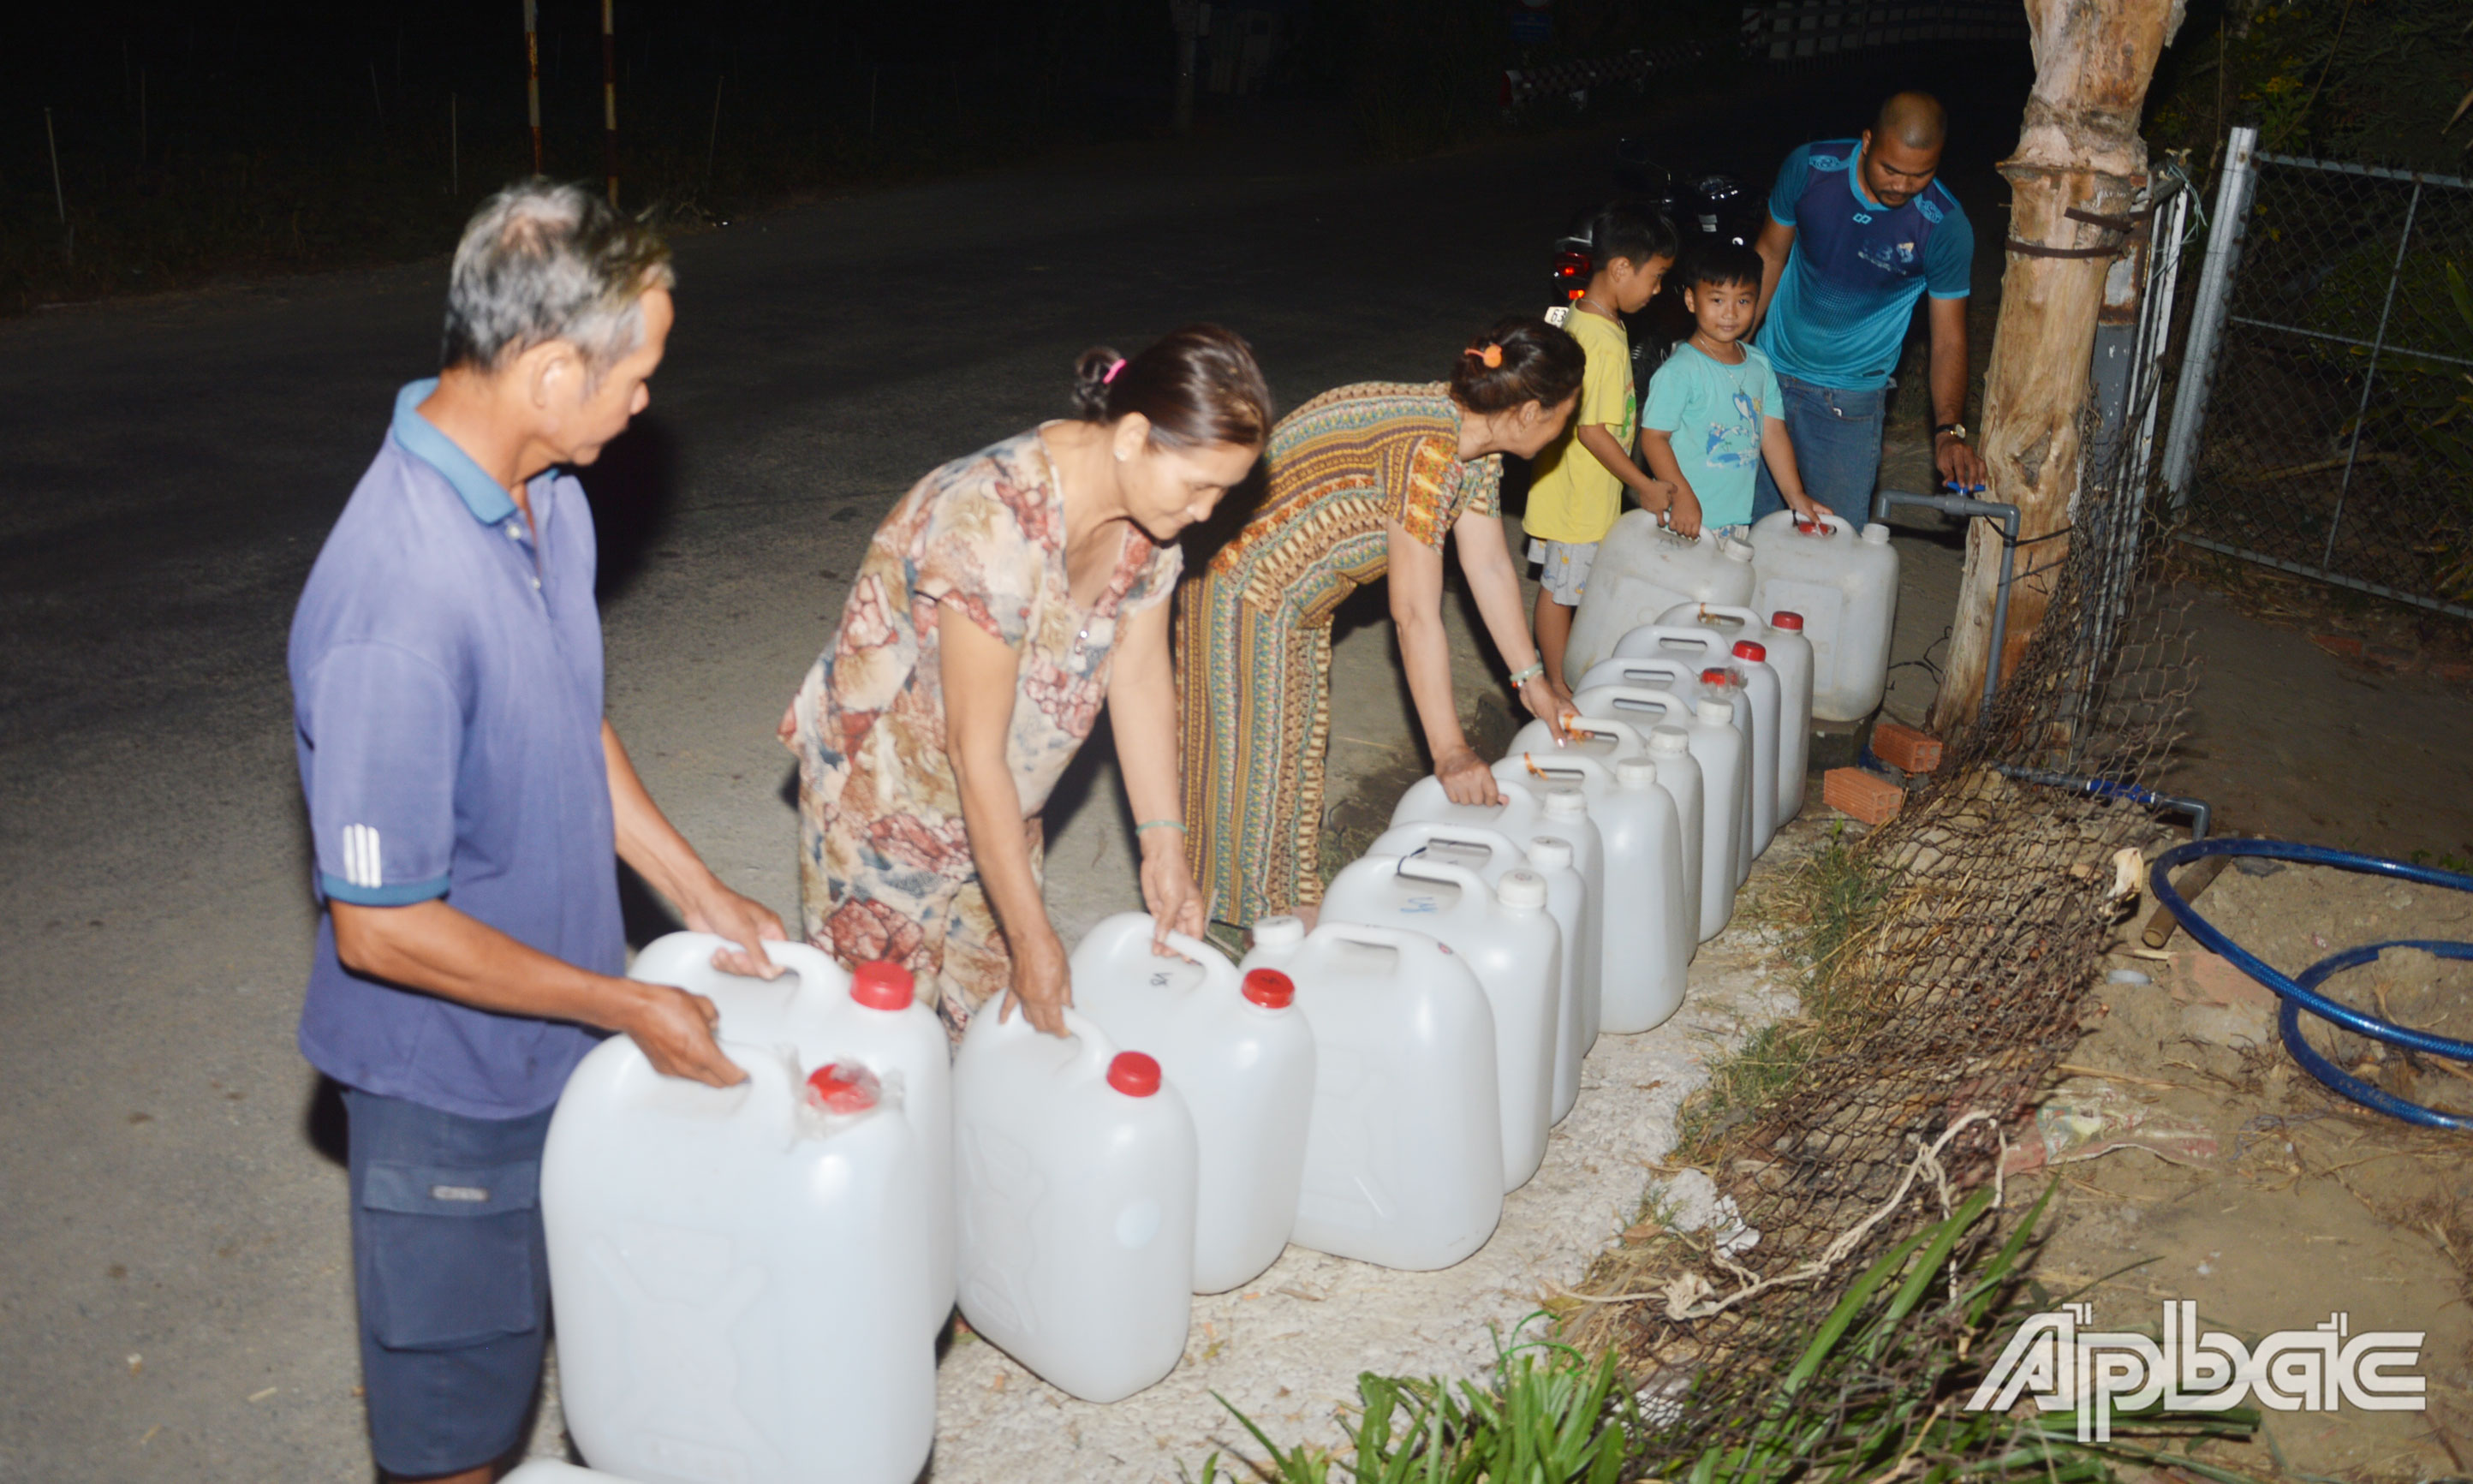 Trong đêm tối, nhiều người dân ở xã Gia Thuận vẫn chực chờ canh lấy nước sinh hoạt. Tình trạng này đã kéo dài khoảng 1 tuần nay.